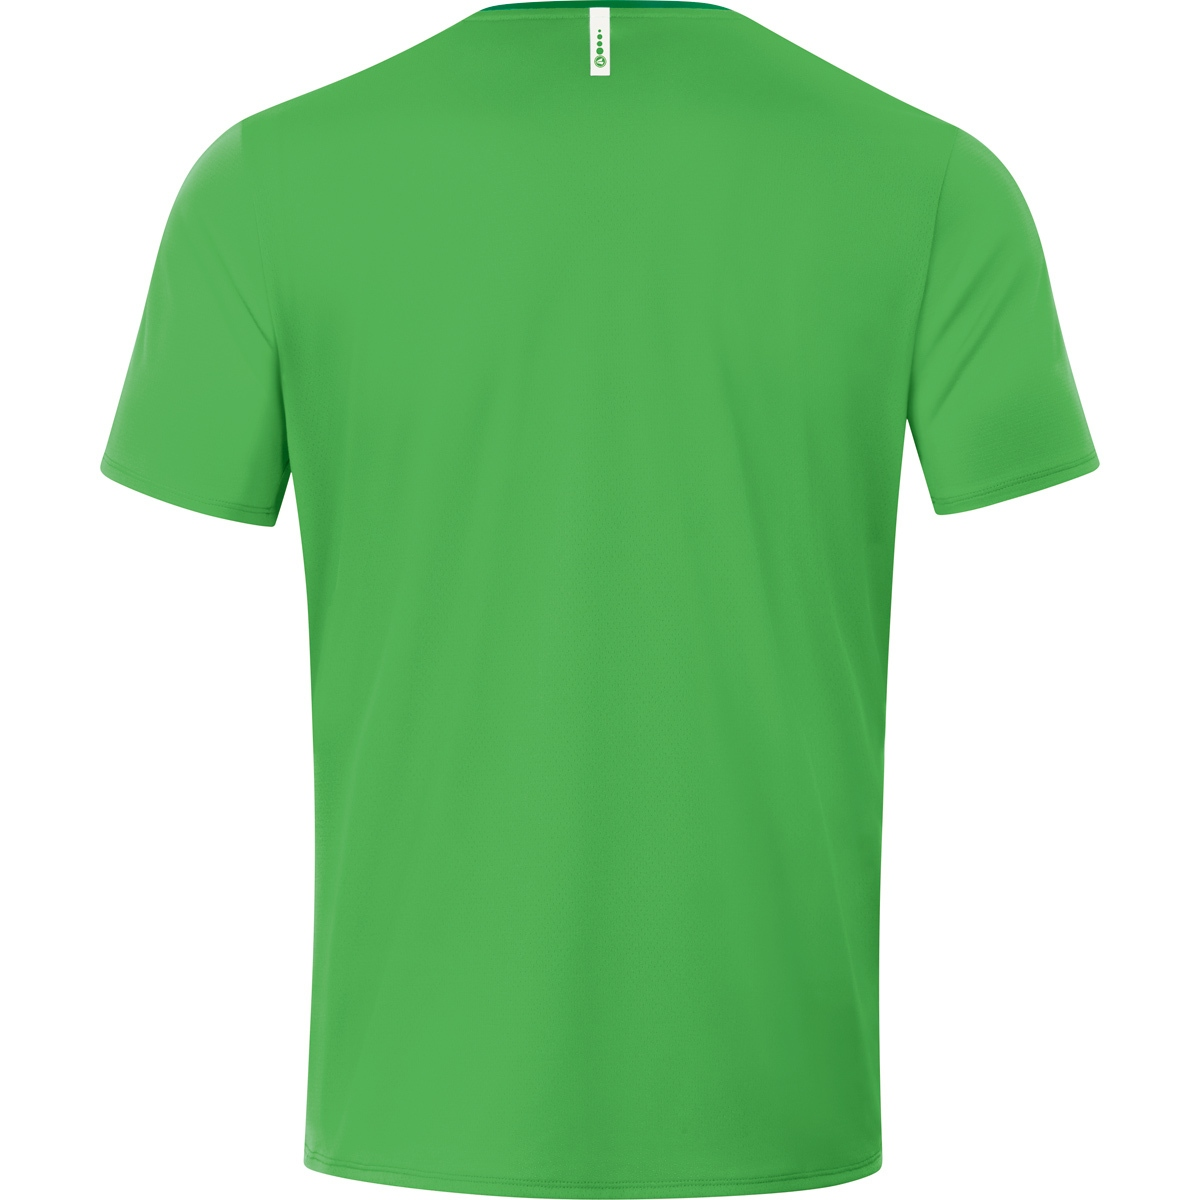 XL, Champ green/sportgrün, JAKO soft 2.0 Gr. Herren, T-Shirt 6120